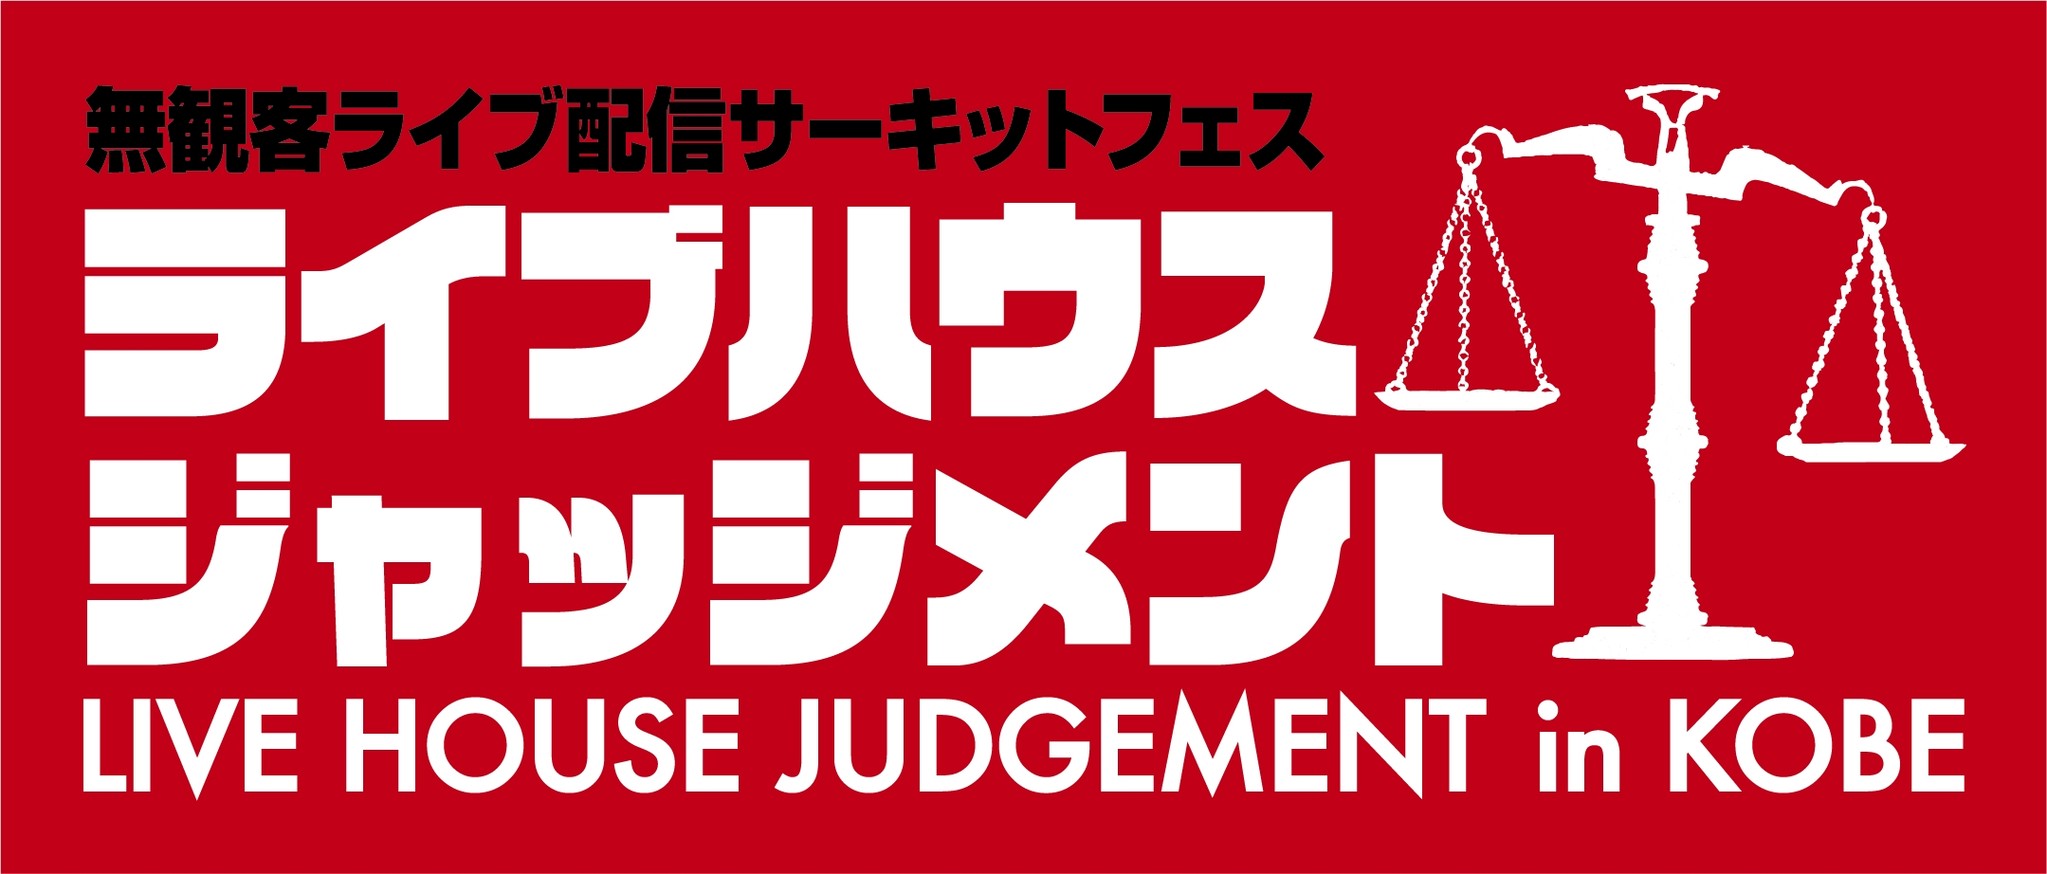 ライブハウスジャッジメント In Kobe 詳細発表 有限会社アームテックパブリシャーズのプレスリリース